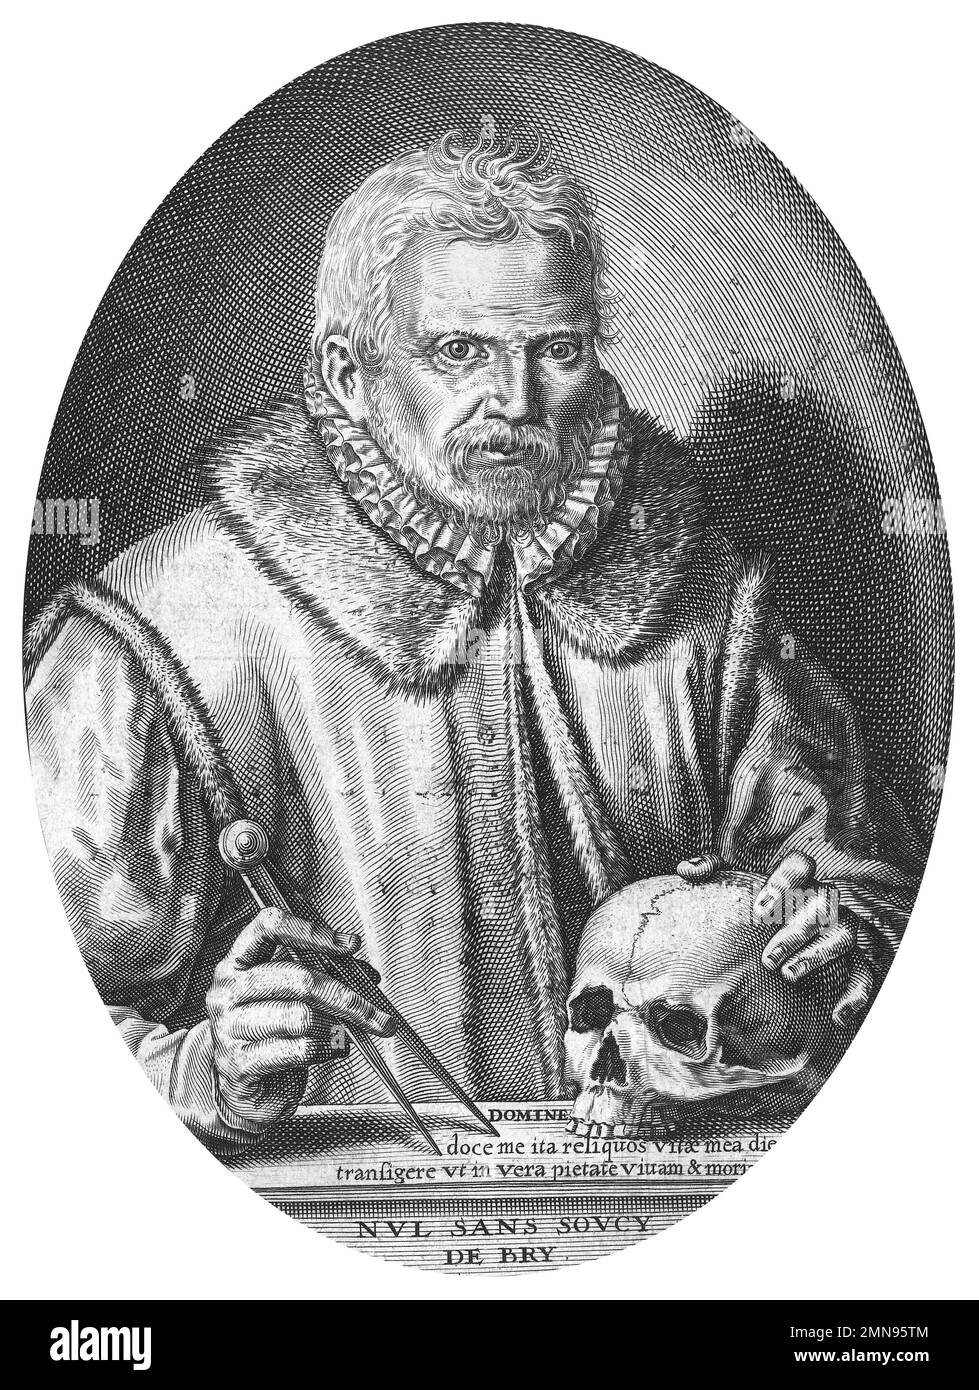 Theodor de Bry. Autoportrait par le graveur néerlandais, Theodor de Bry (Théodorus de Bry : 1528-1598), gravure / impression typographique 1597 Banque D'Images